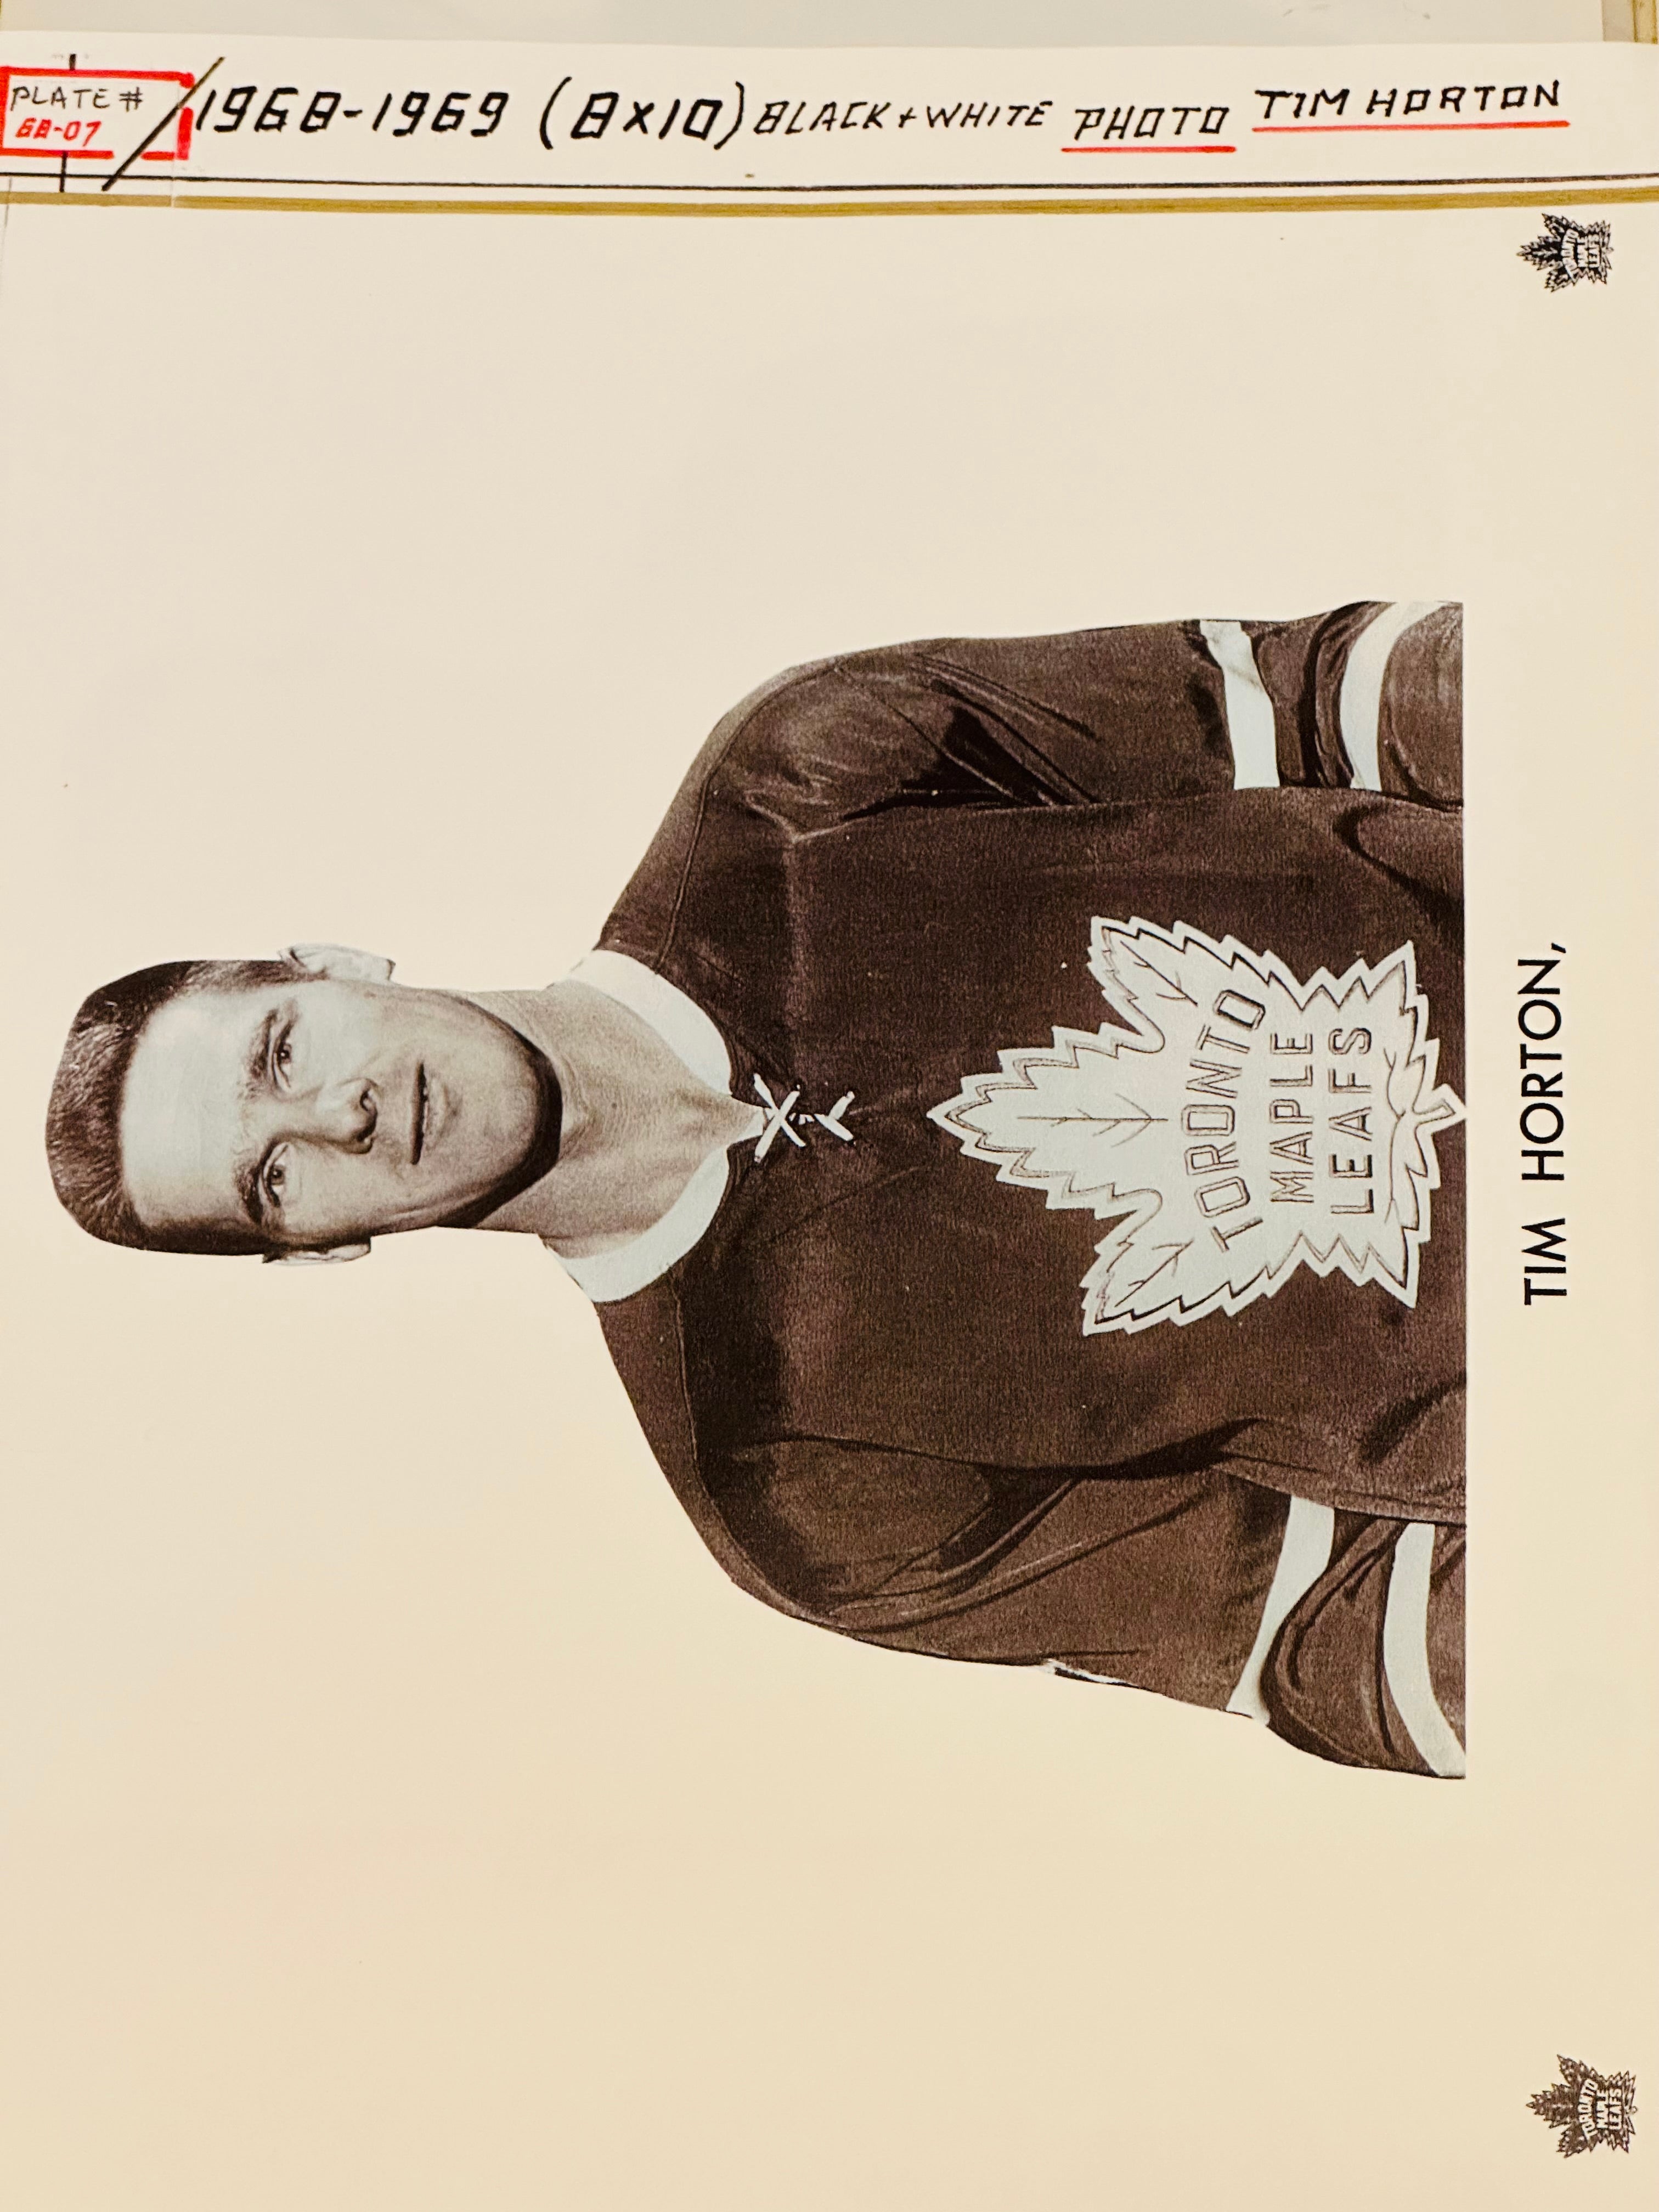 Tim Horton Leafs Legend rare original press photo 1968-69